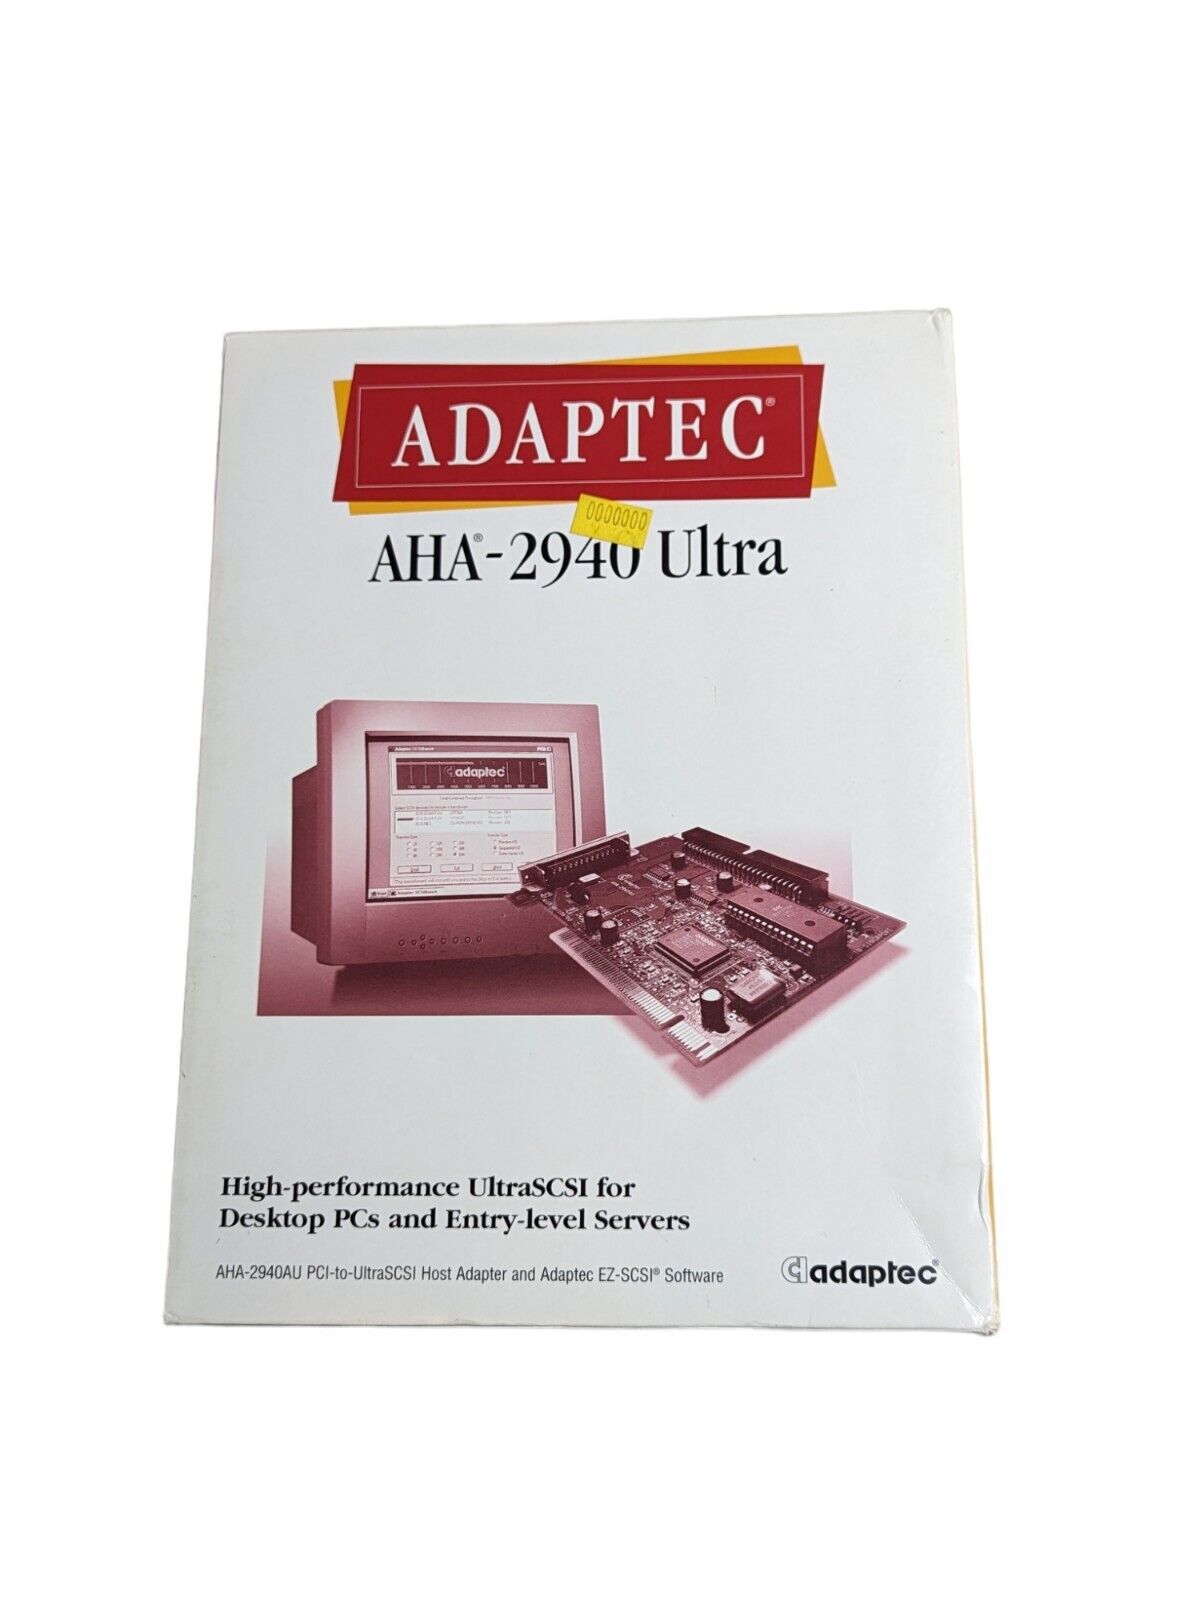 ADAPTEC AHA-2940 Ultra PCI-to-UltraSCSI Host Adapter & EZ-SCSI Software